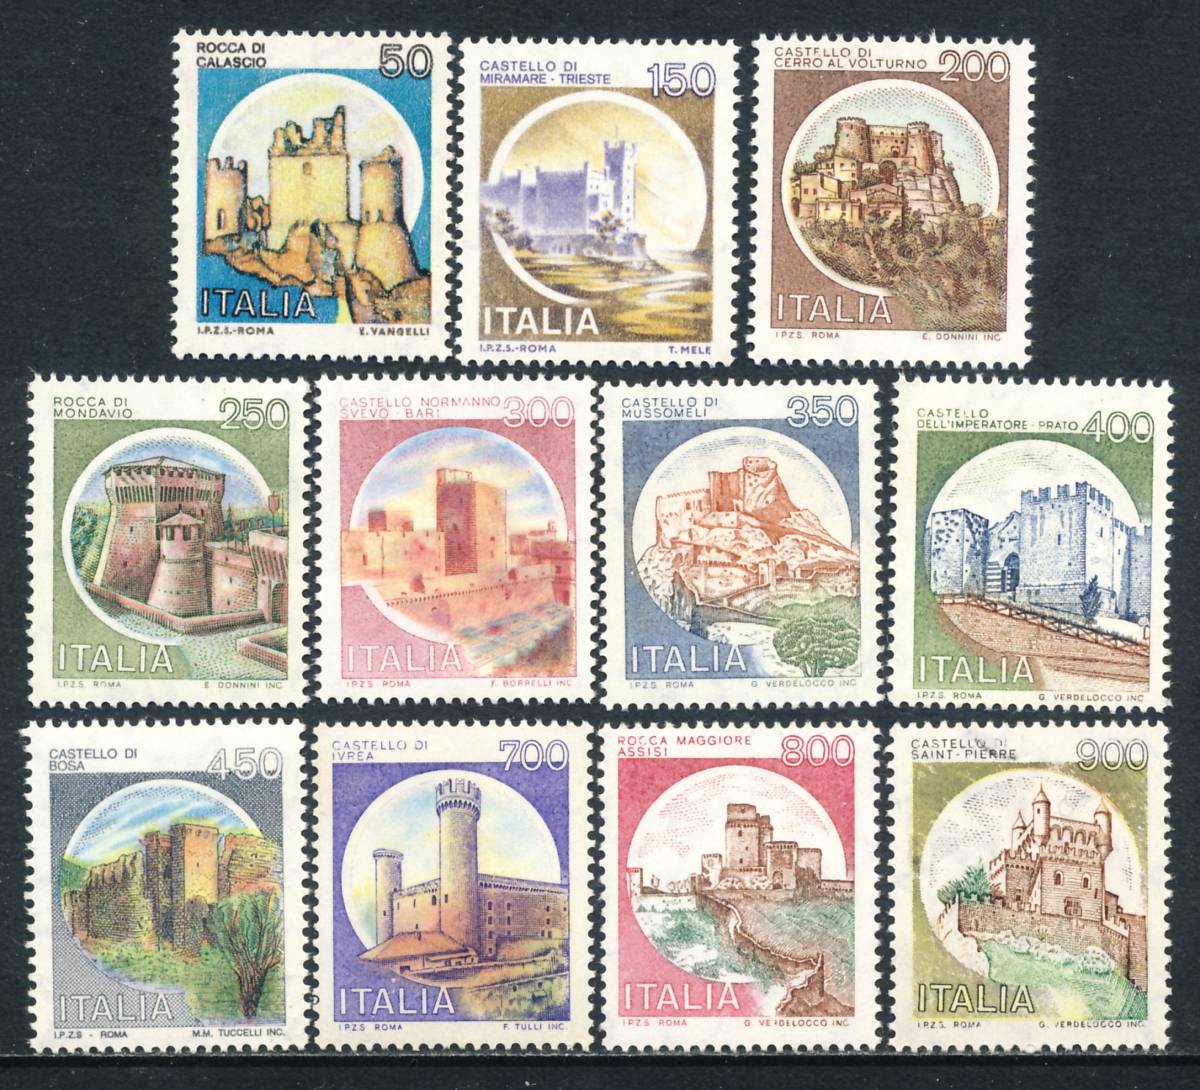 一部予約販売】 25654現品限り 外国切手未使用 イタリア発行鳥4種連刷 